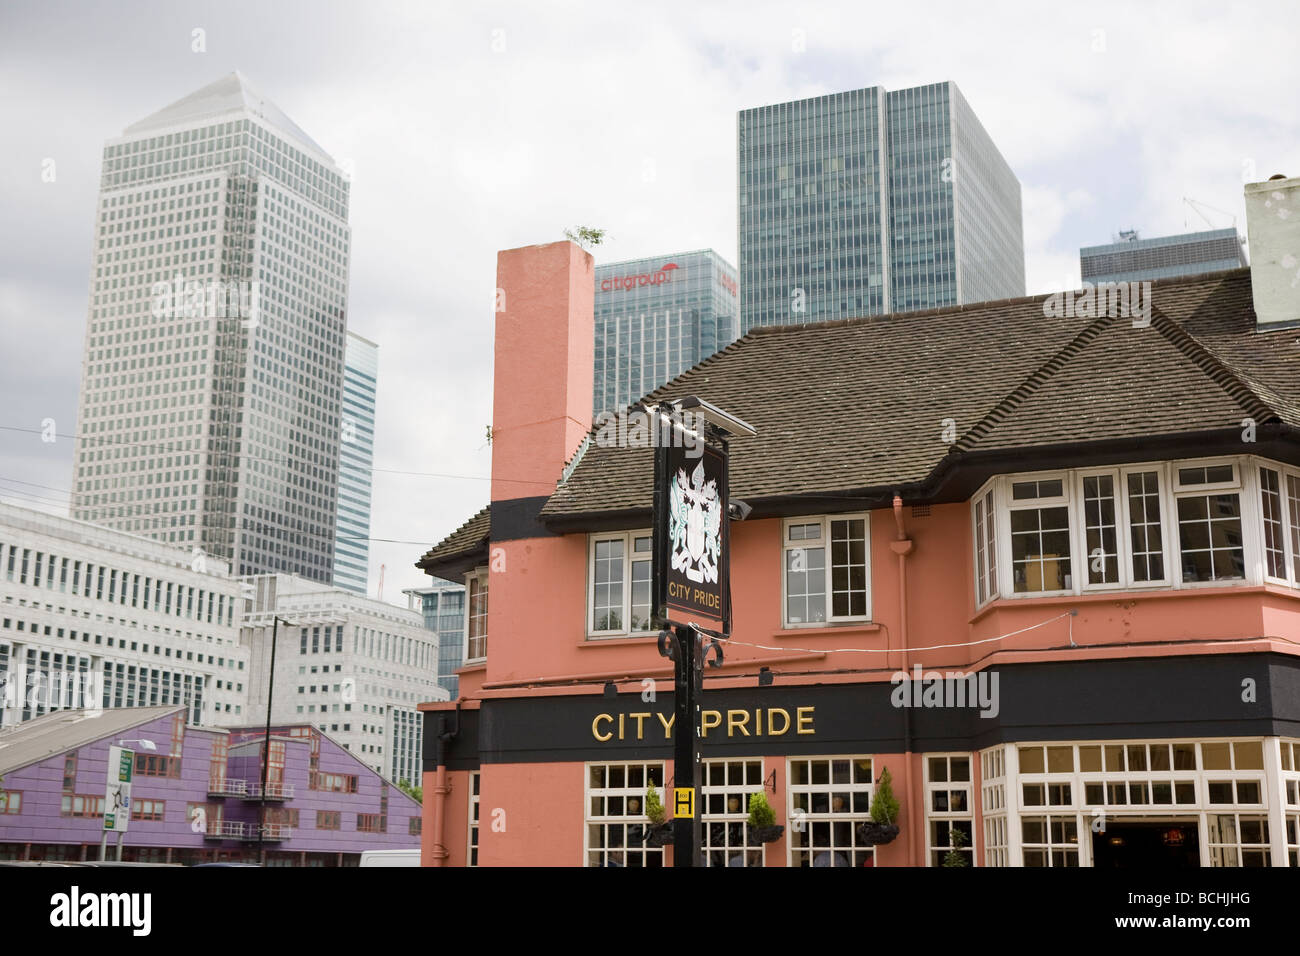 La fierté de la ville Pub, Canary Wharf, Londres Est Banque D'Images